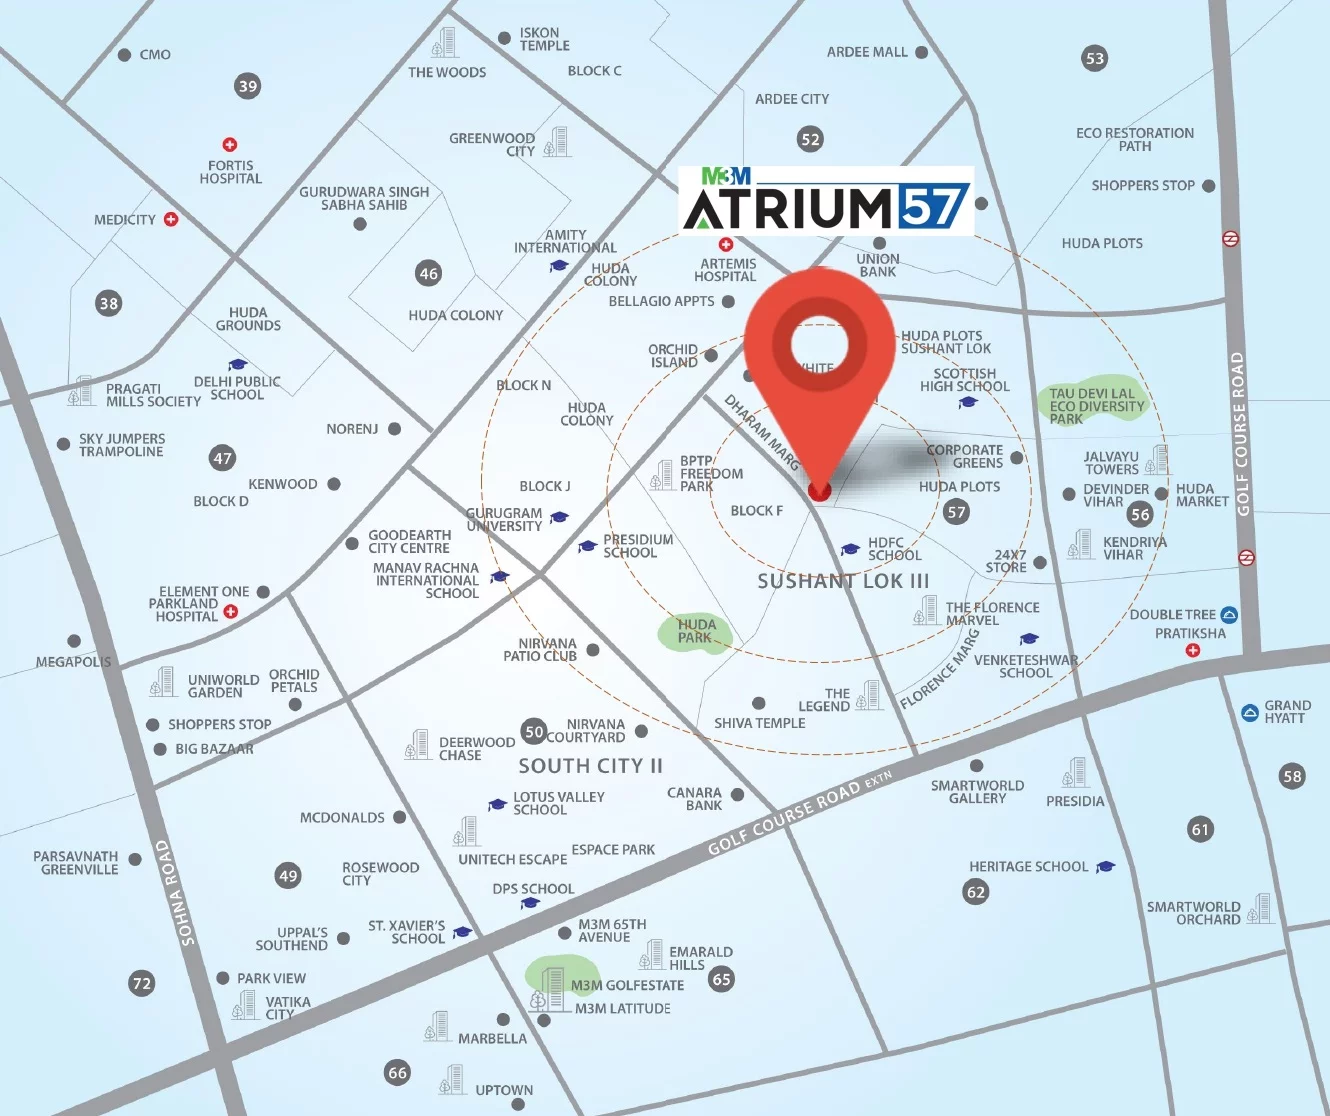 M3M Atrium 57 Location Map: